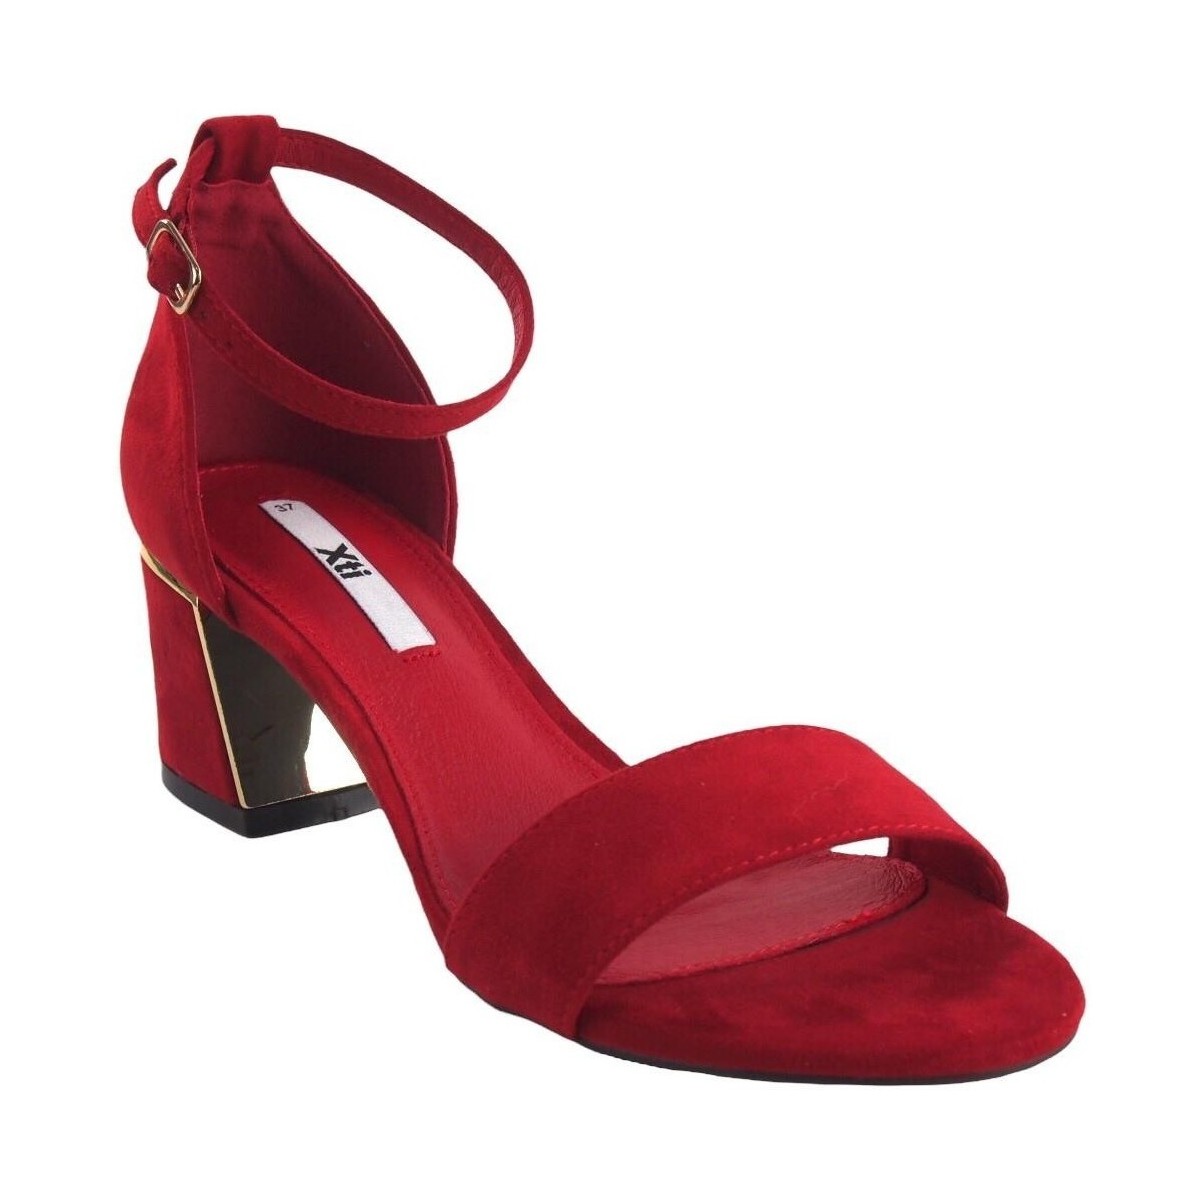 Chaussures Femme Multisport Xti Dame de cérémonie  45626 rouge Rouge